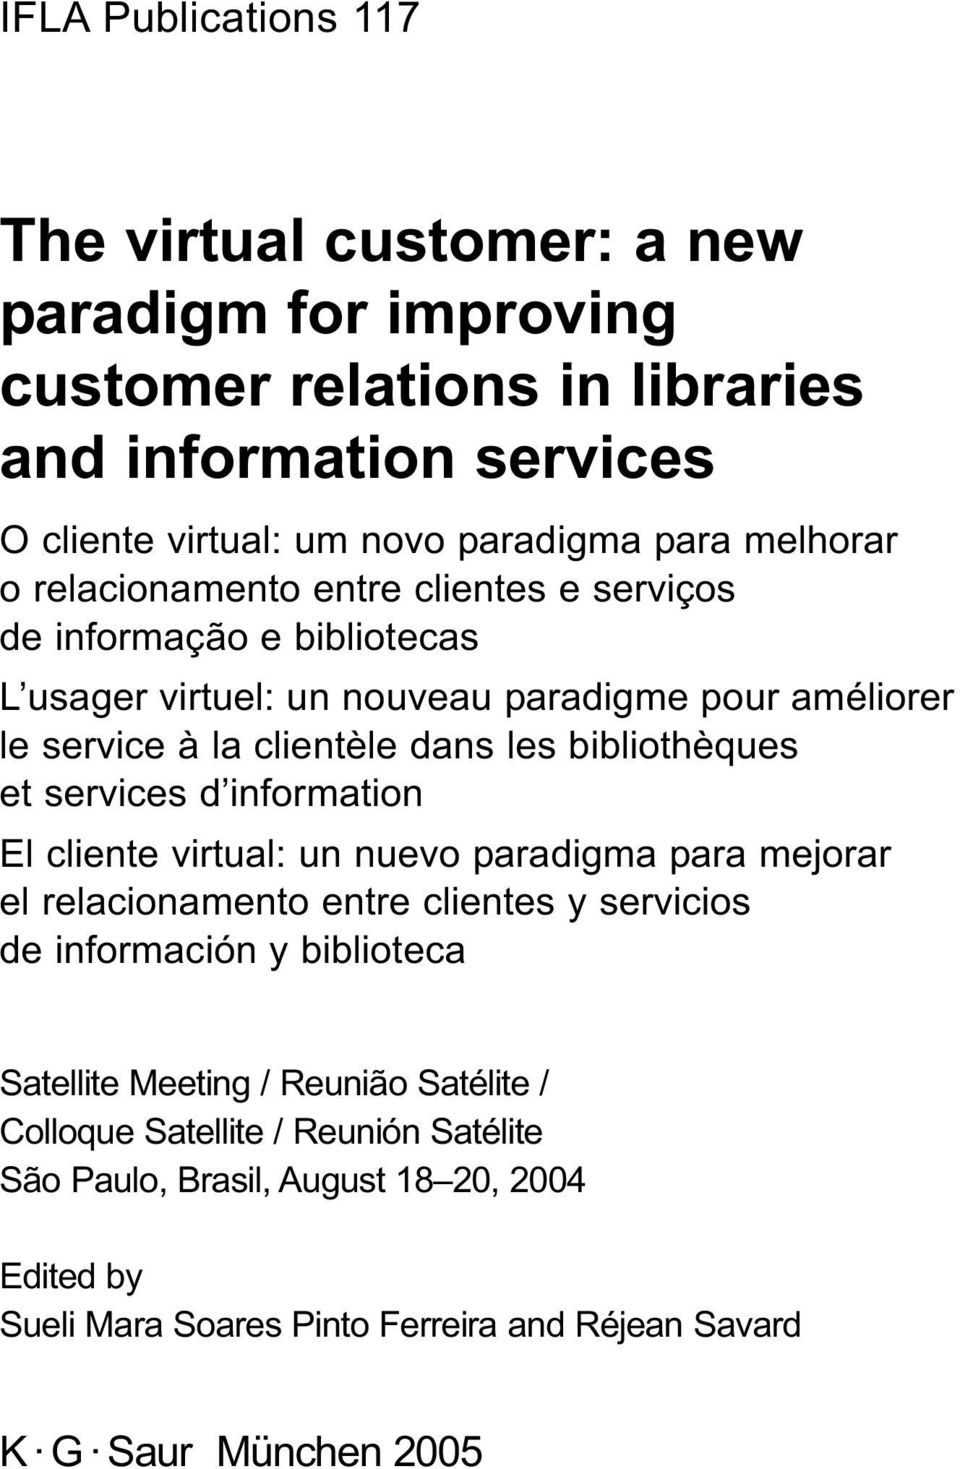 bibliothèques et services d information El cliente virtual: un nuevo paradigma para mejorar el relacionamento entre clientes y servicios de información y biblioteca Satellite